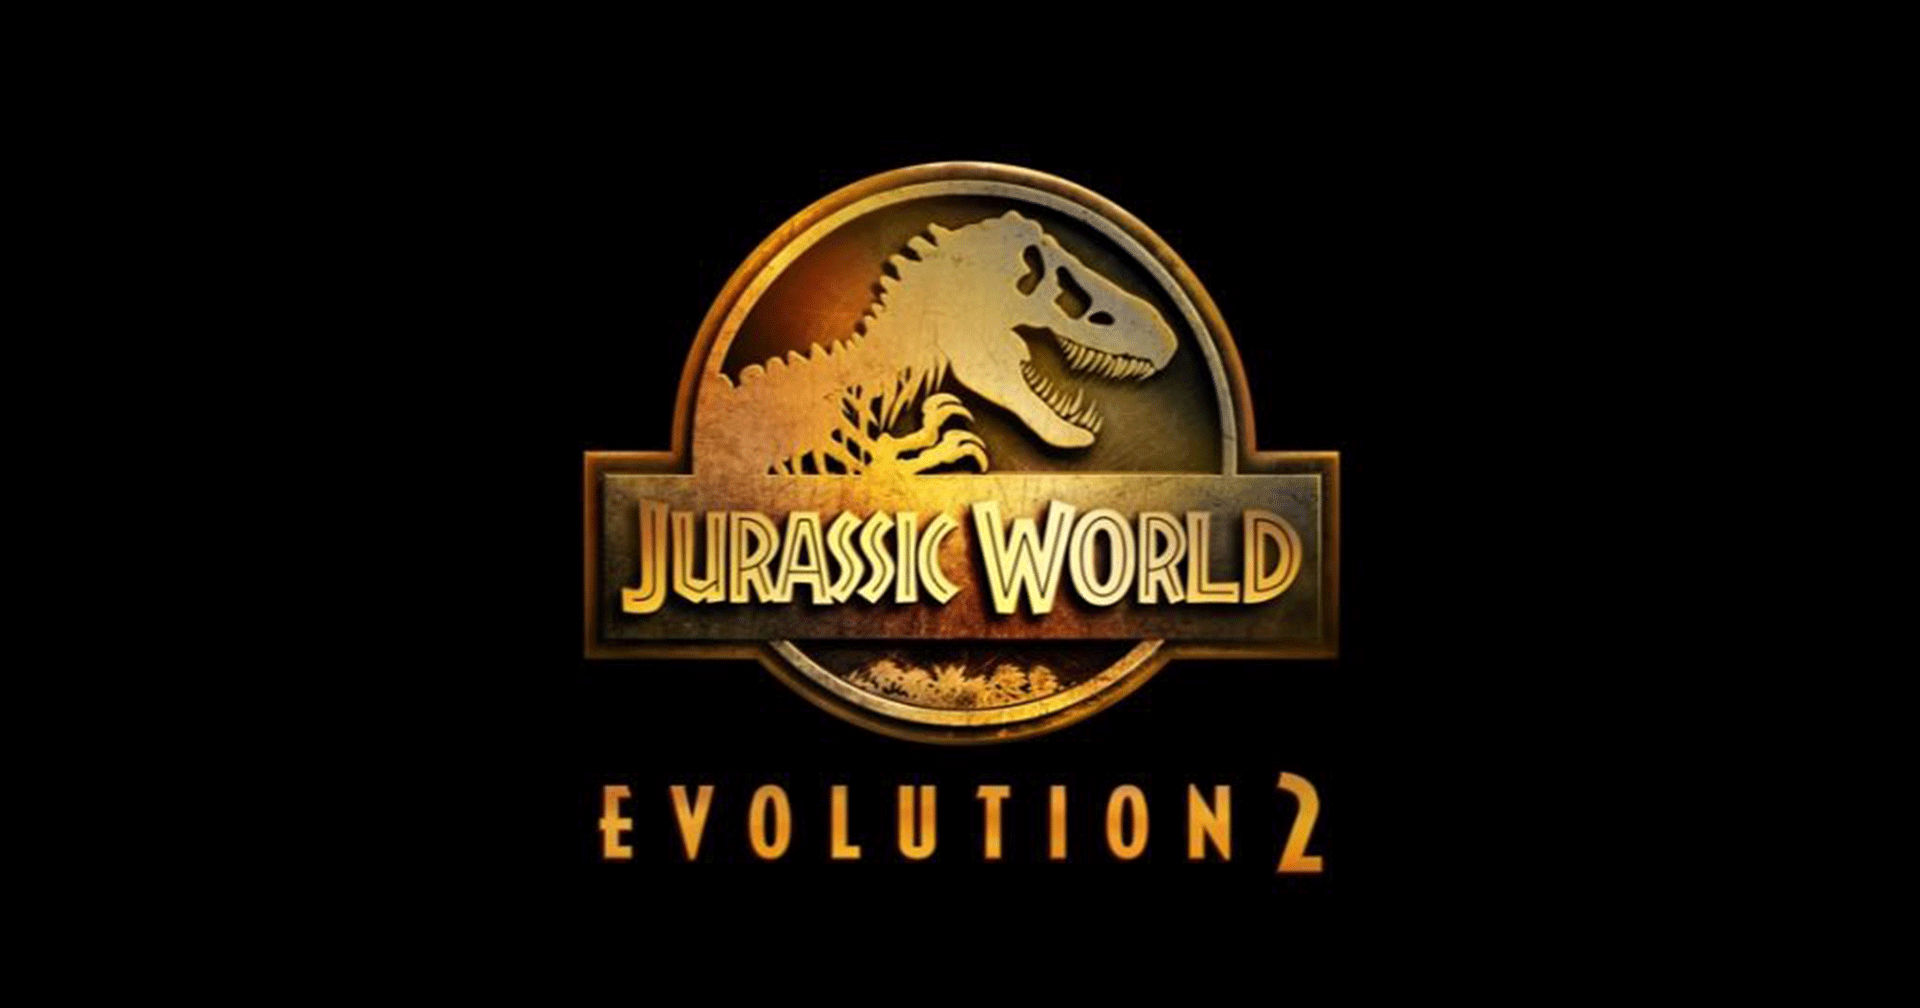 ประกาศเปิดตัว Jurassic World Evolution 2 พร้อมวางจำหน่ายภายในปีนี้